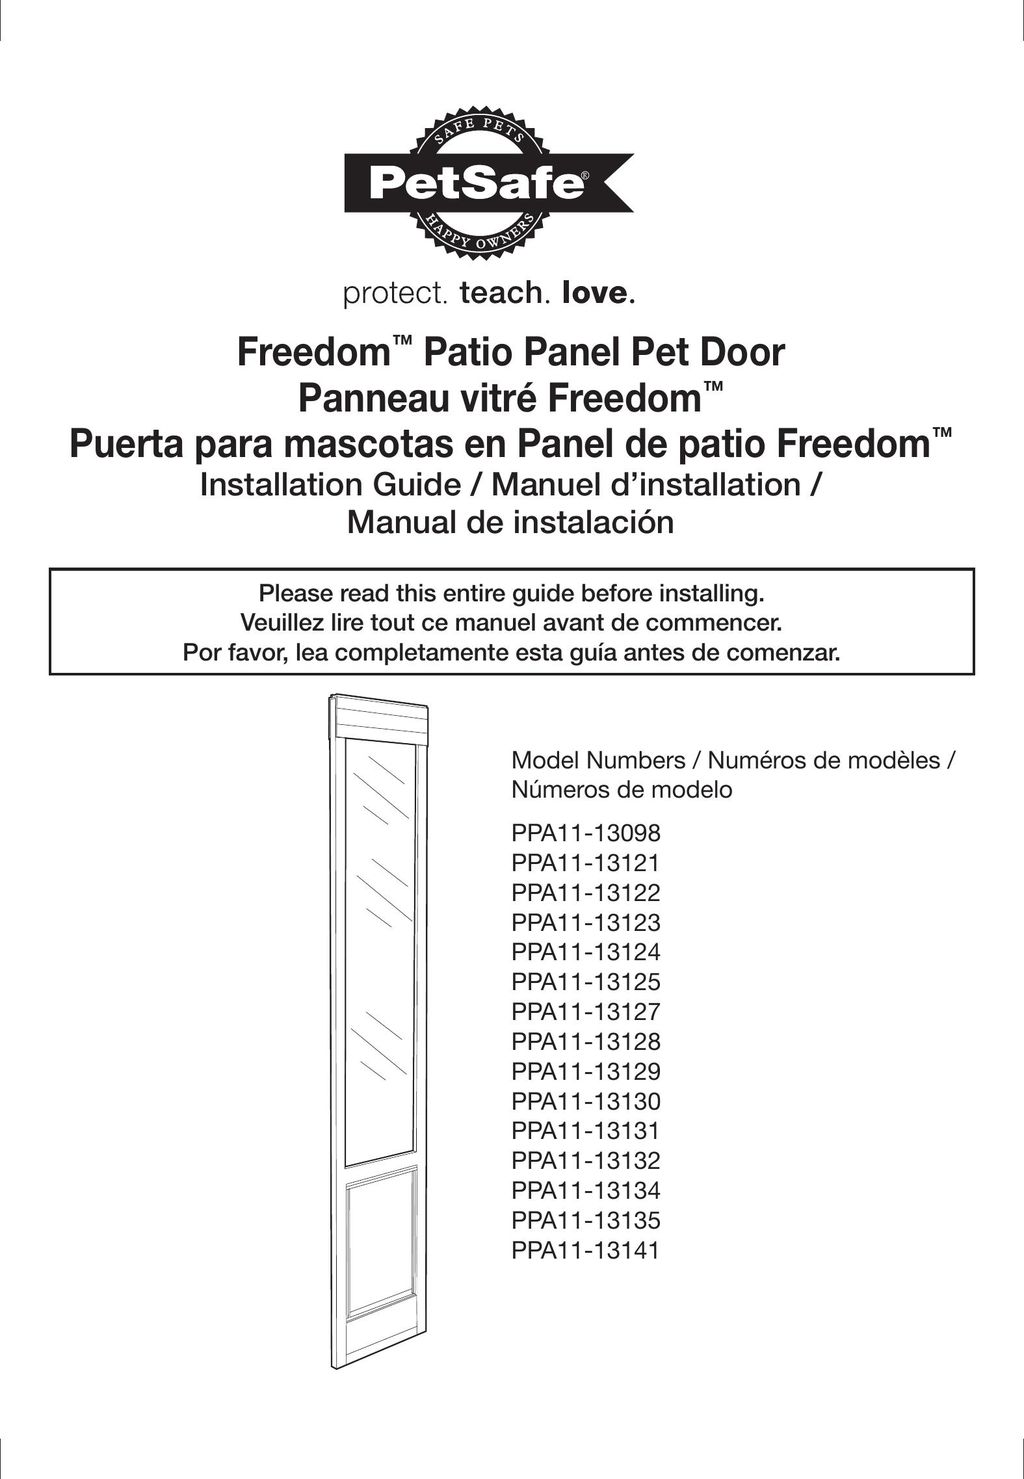 Petsafe PPA11-13127 Door User Manual